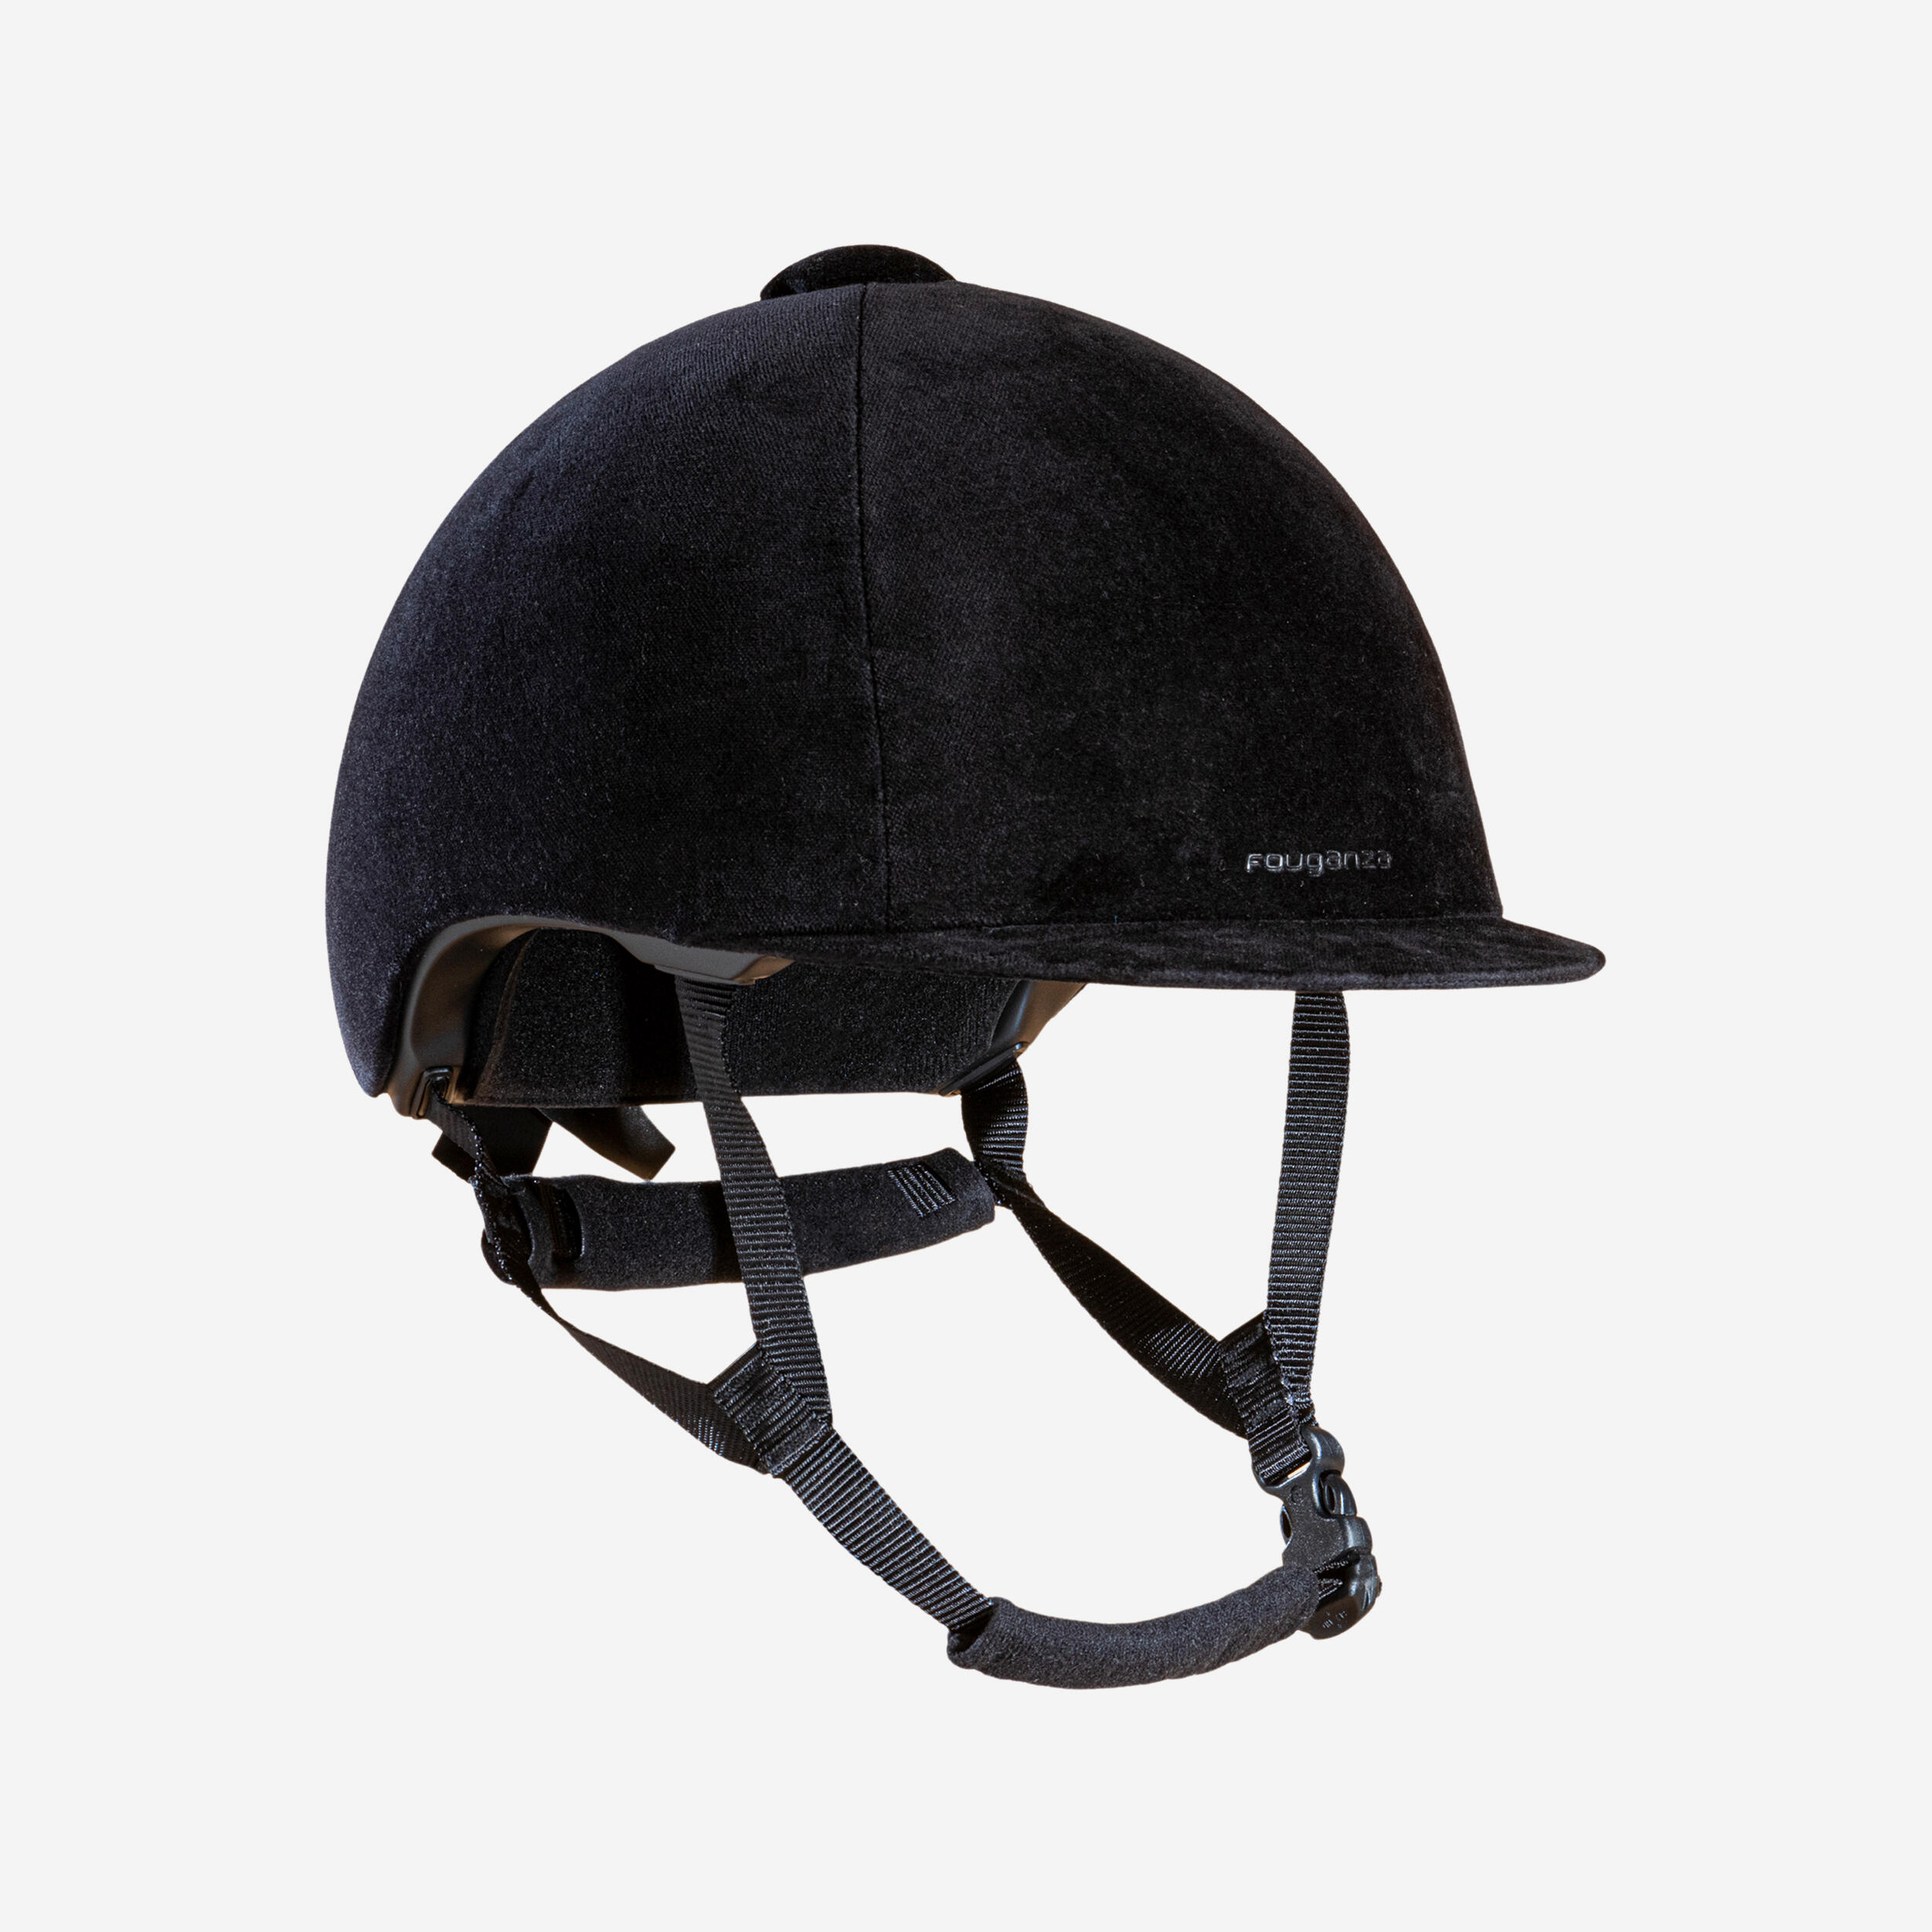 Adult/Kids' Horse Riding Helmet 140 - Black Velvet 1/4